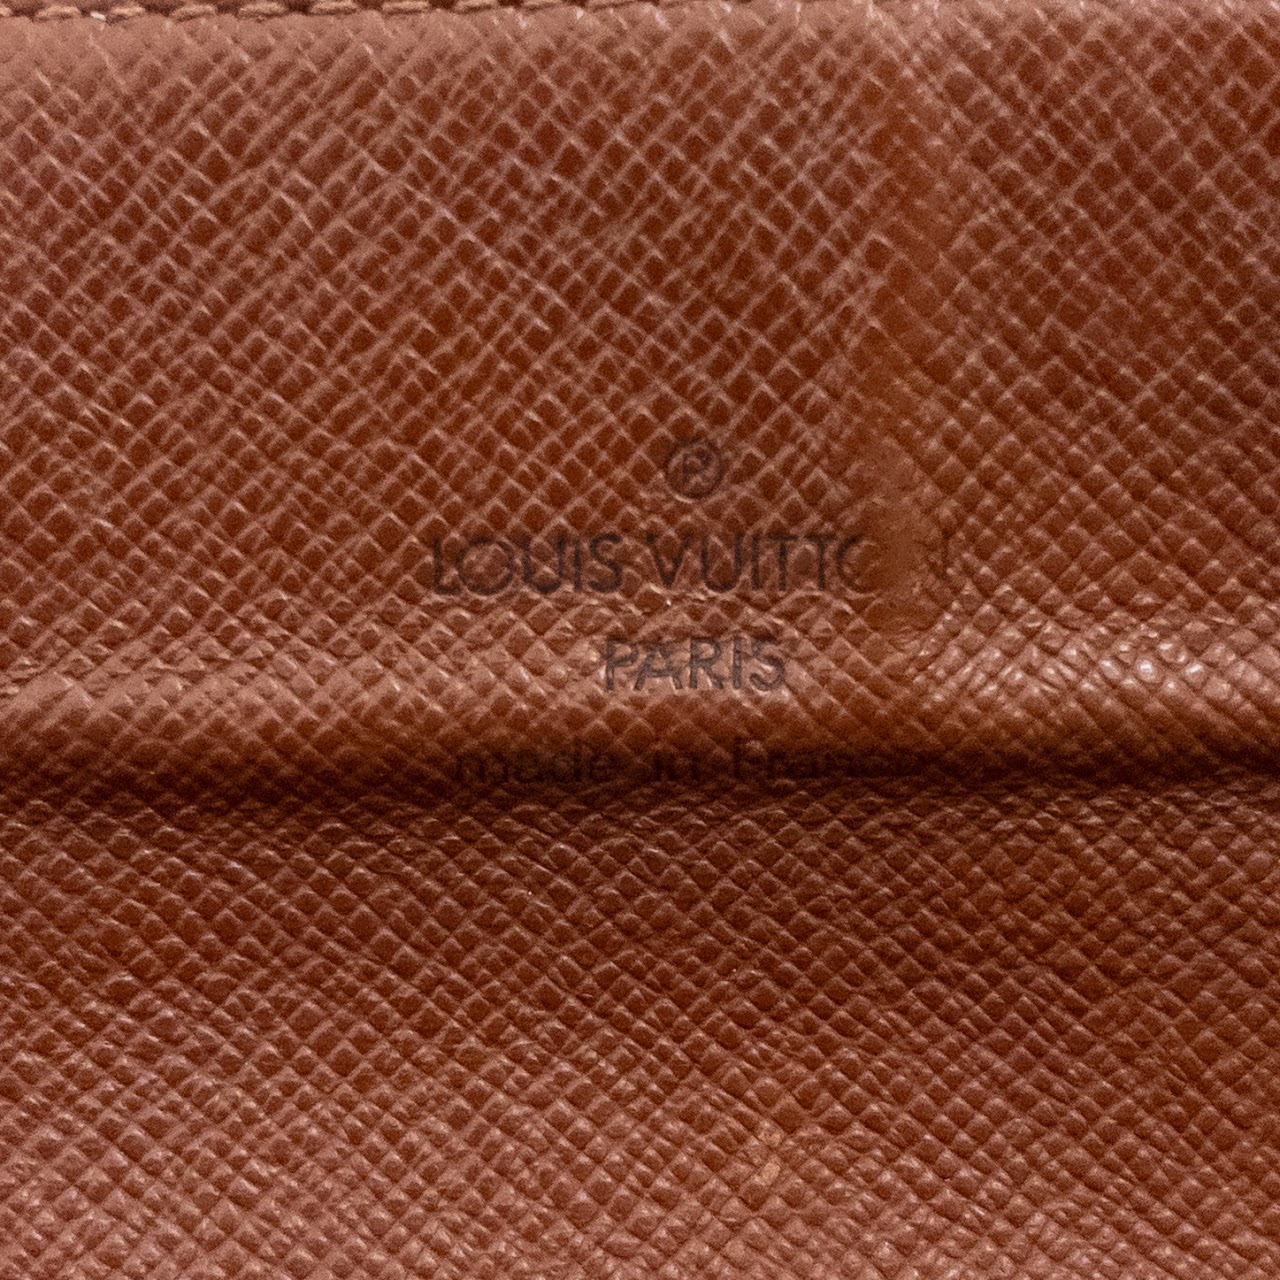 Louis Vuitton Monogram Canvas Long Wallet